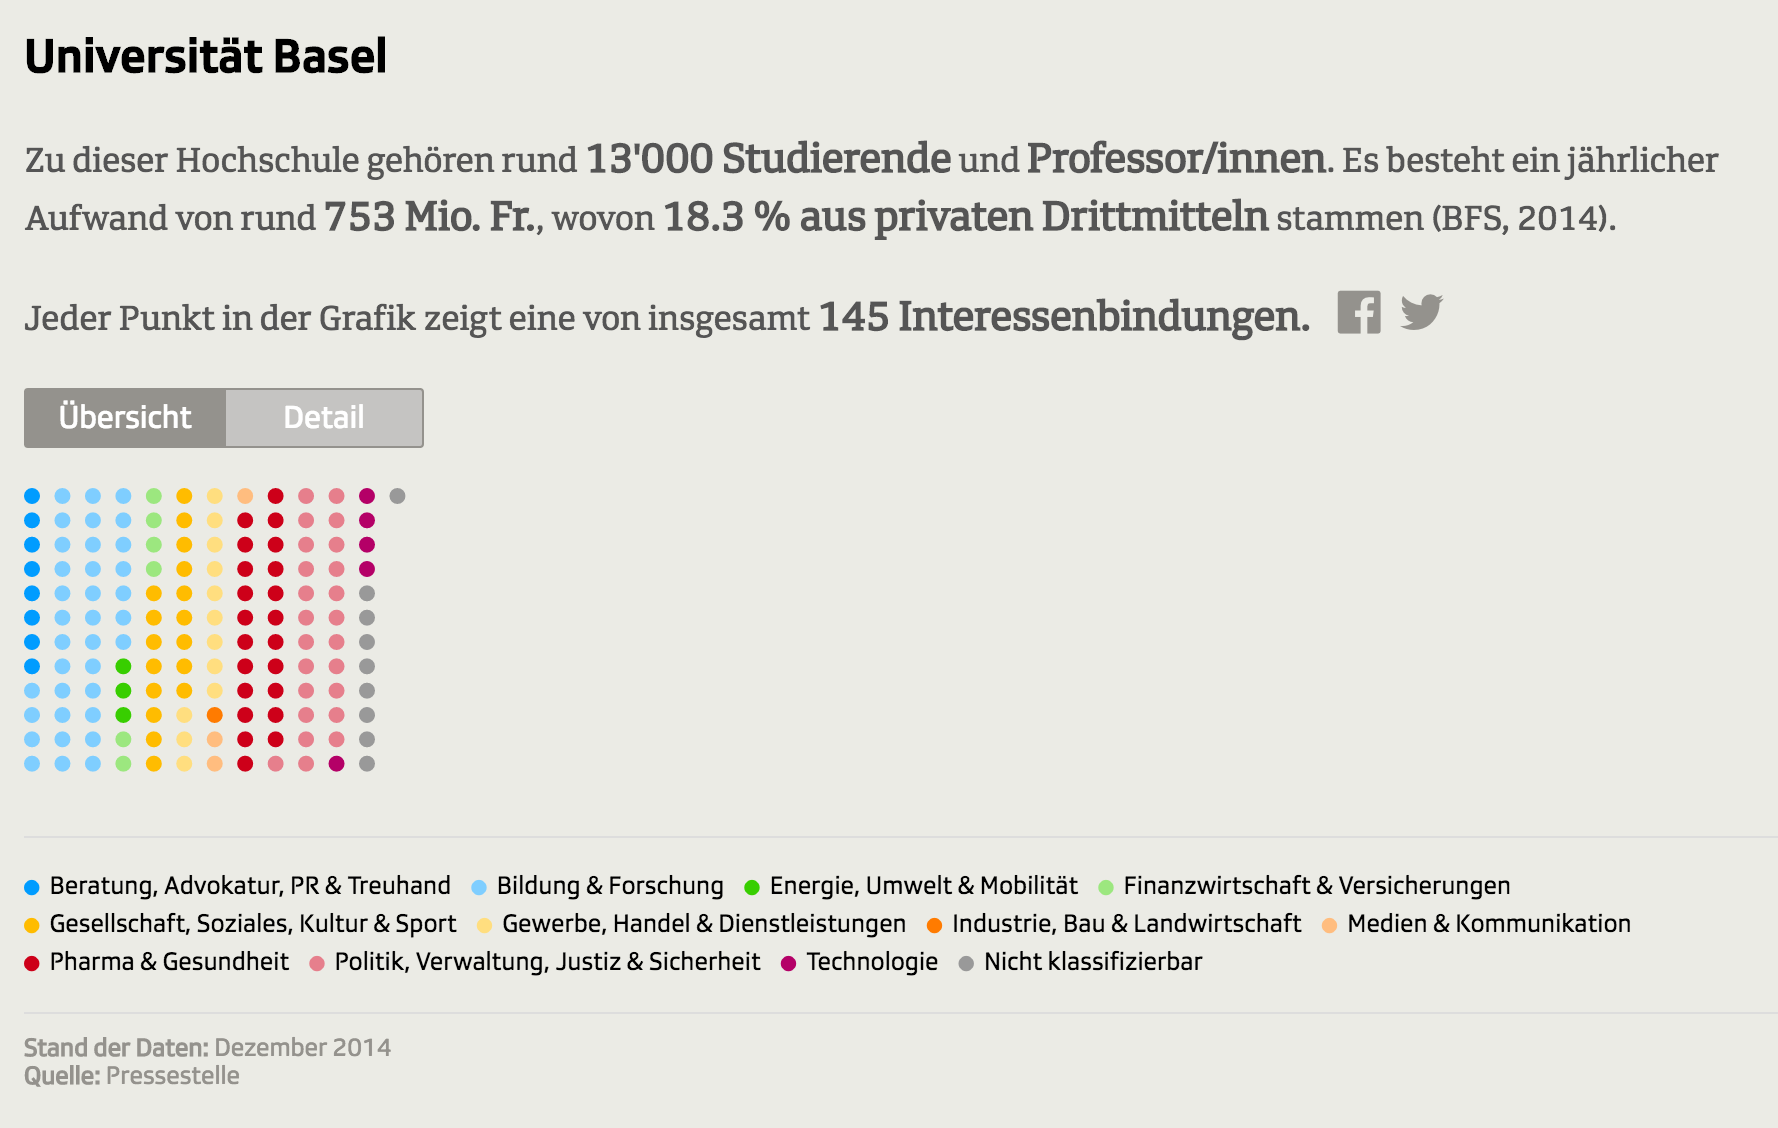 In einer interaktiven Grafik hat SRF die finanziellen Verbindungen Schweizer Universtitäten übersichtlich dargestellt.